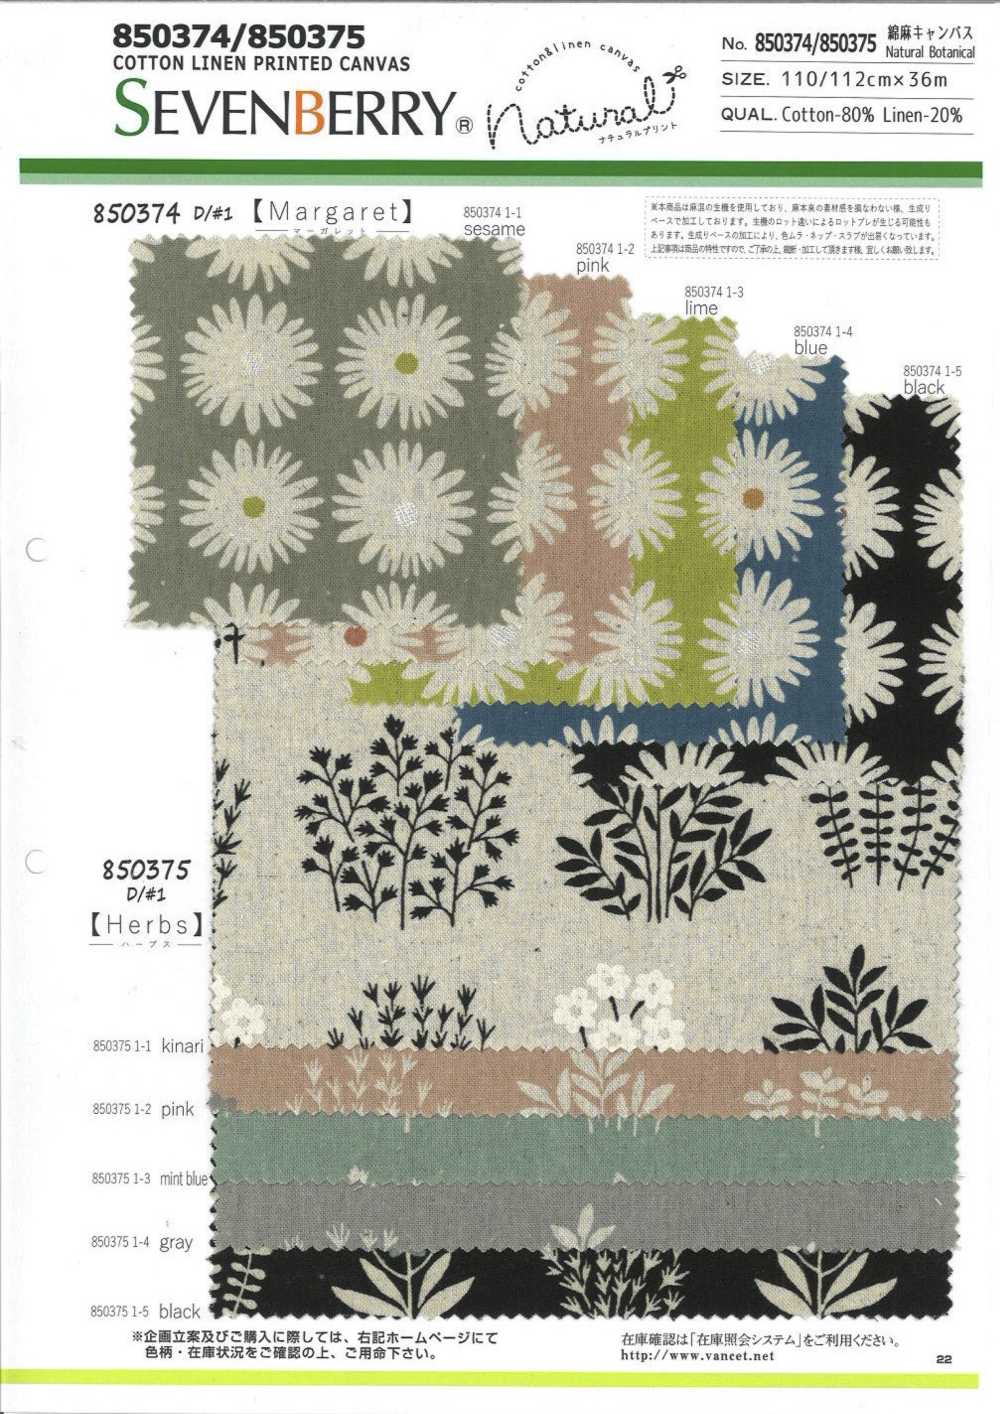 850374 Leinen-Leinen-Leinwand, Natürlich, Botanisch, Margaret[Textilgewebe] VANCET